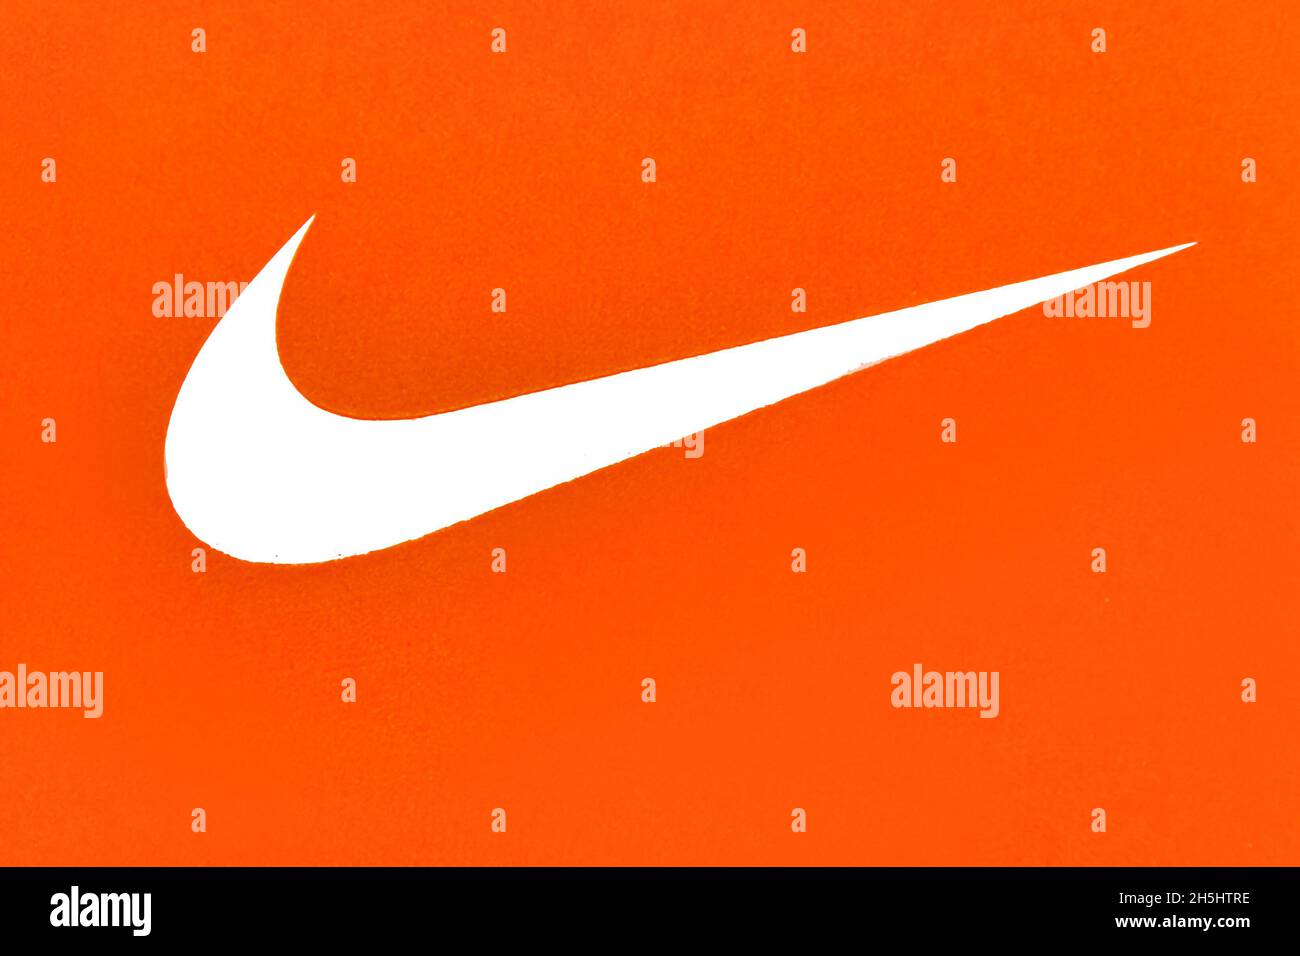 Der Swoosh von Nike auf einer Schuhbox. Der Swoosh ist das Logo des amerikanischen Sportartikeldesigners und Einzelhändlers Nike.Nov 9, 2021 Stockfoto